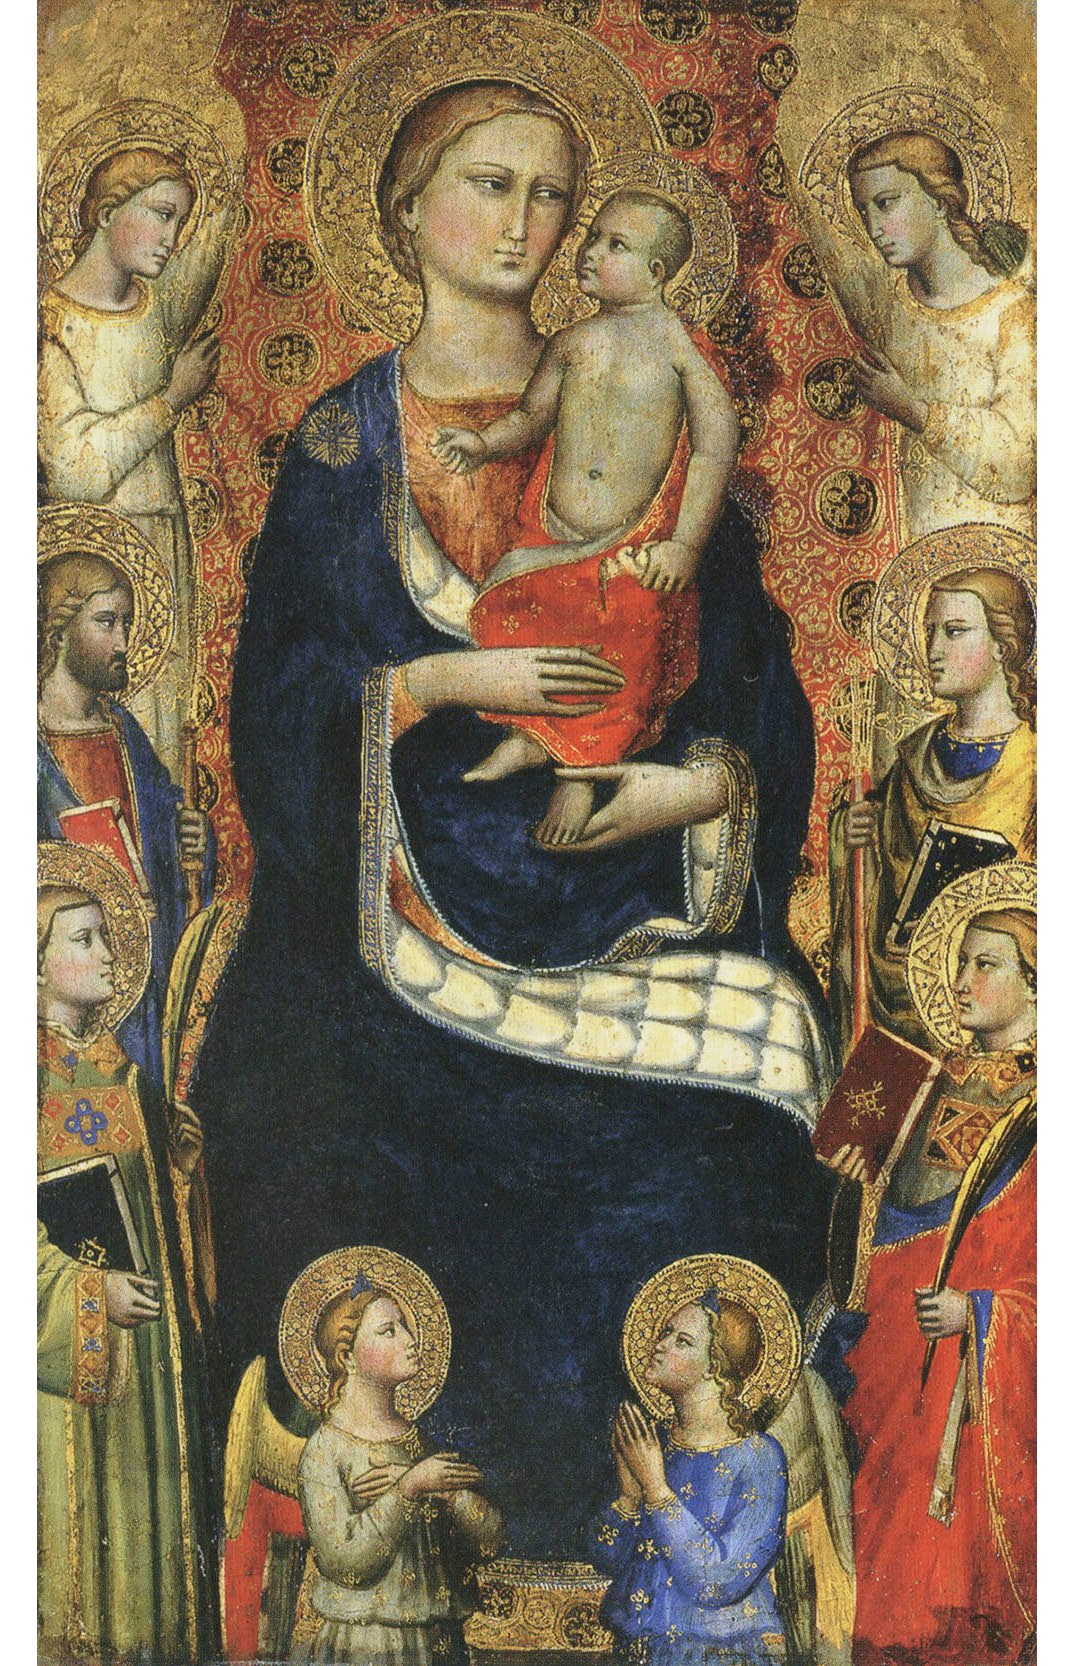 Мастер цеха шерстянщиков. Работал в конце XIV - начале XV века во Флоренции. "Мадонна с Младенцем, четырьмя святыми и четырьмя ангелами".